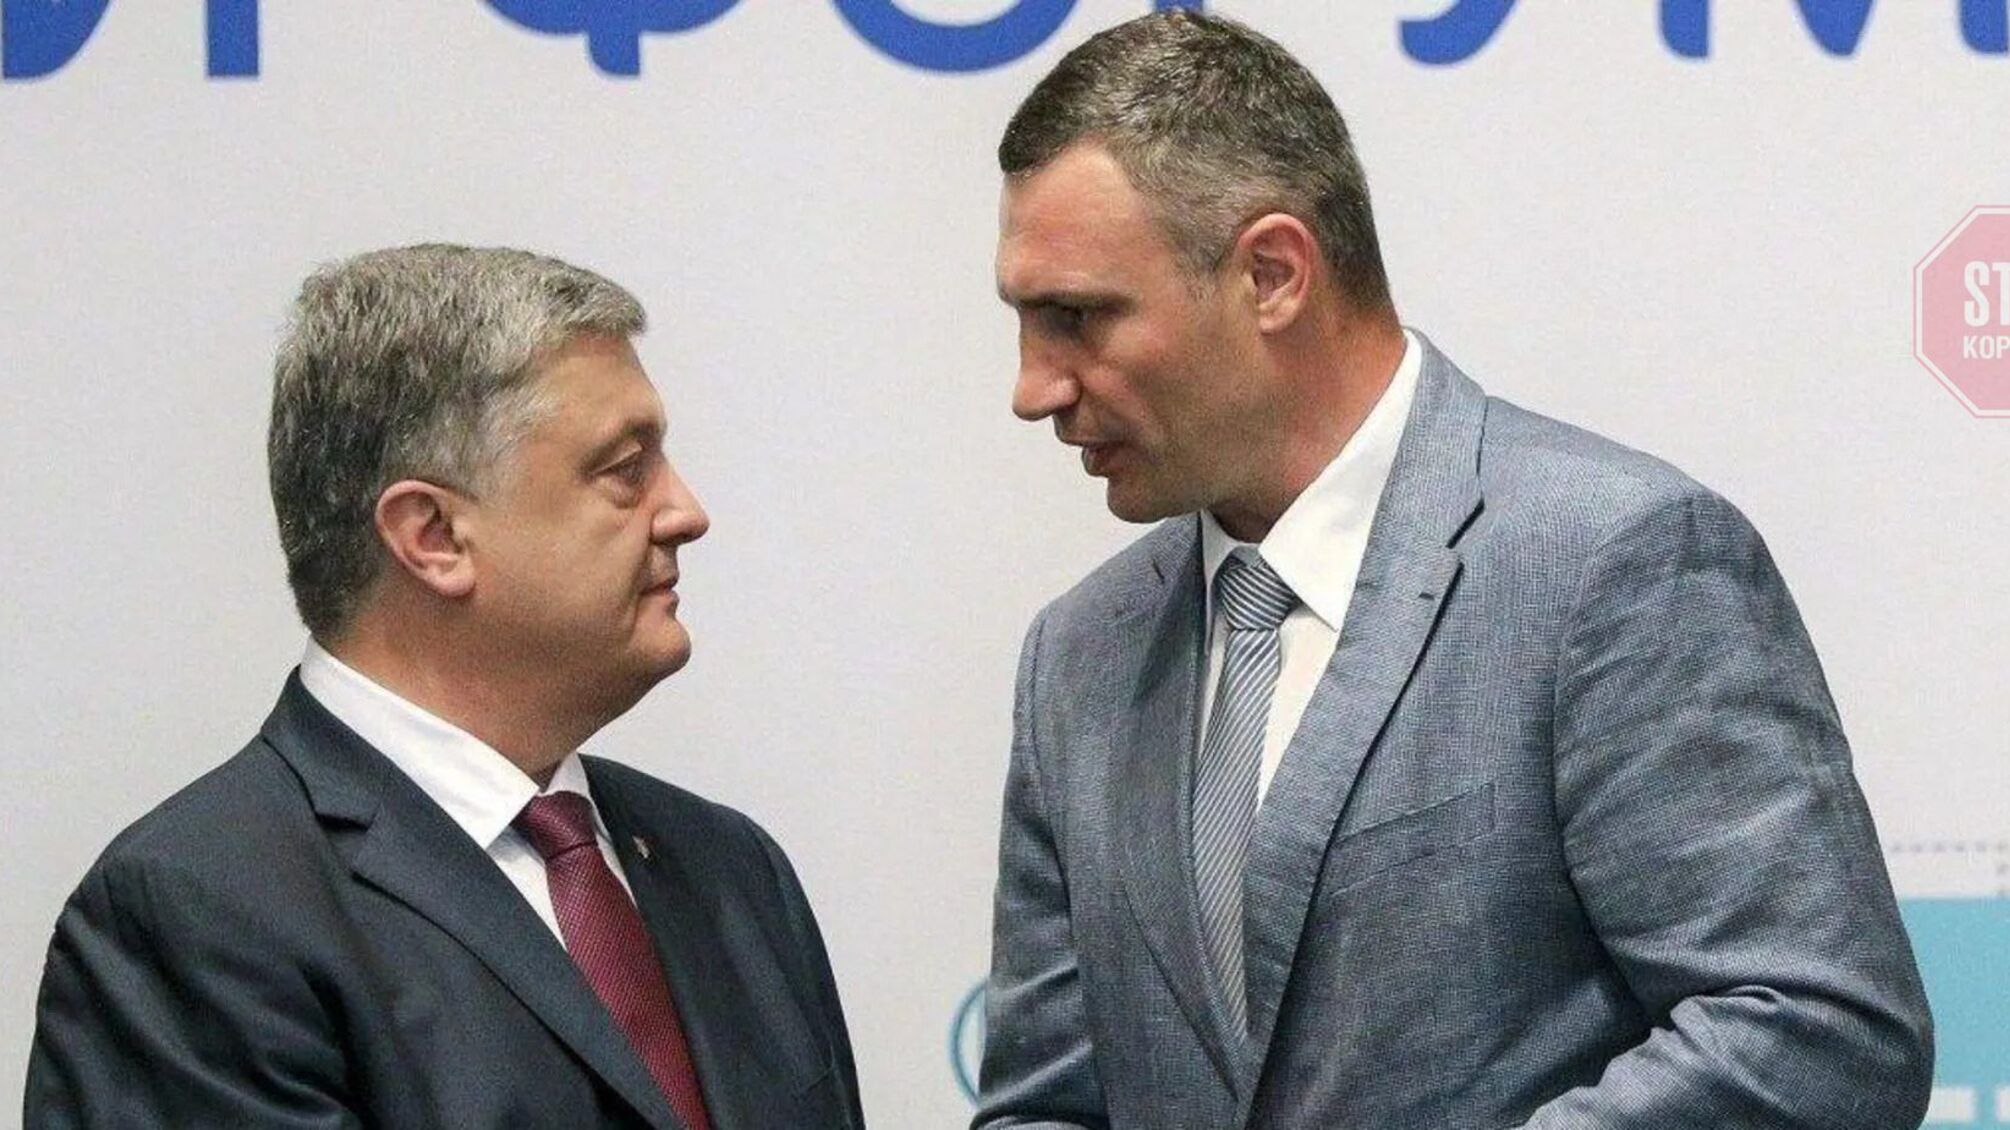 Кличко підтримав п'ятого президента України Петра Порошенка